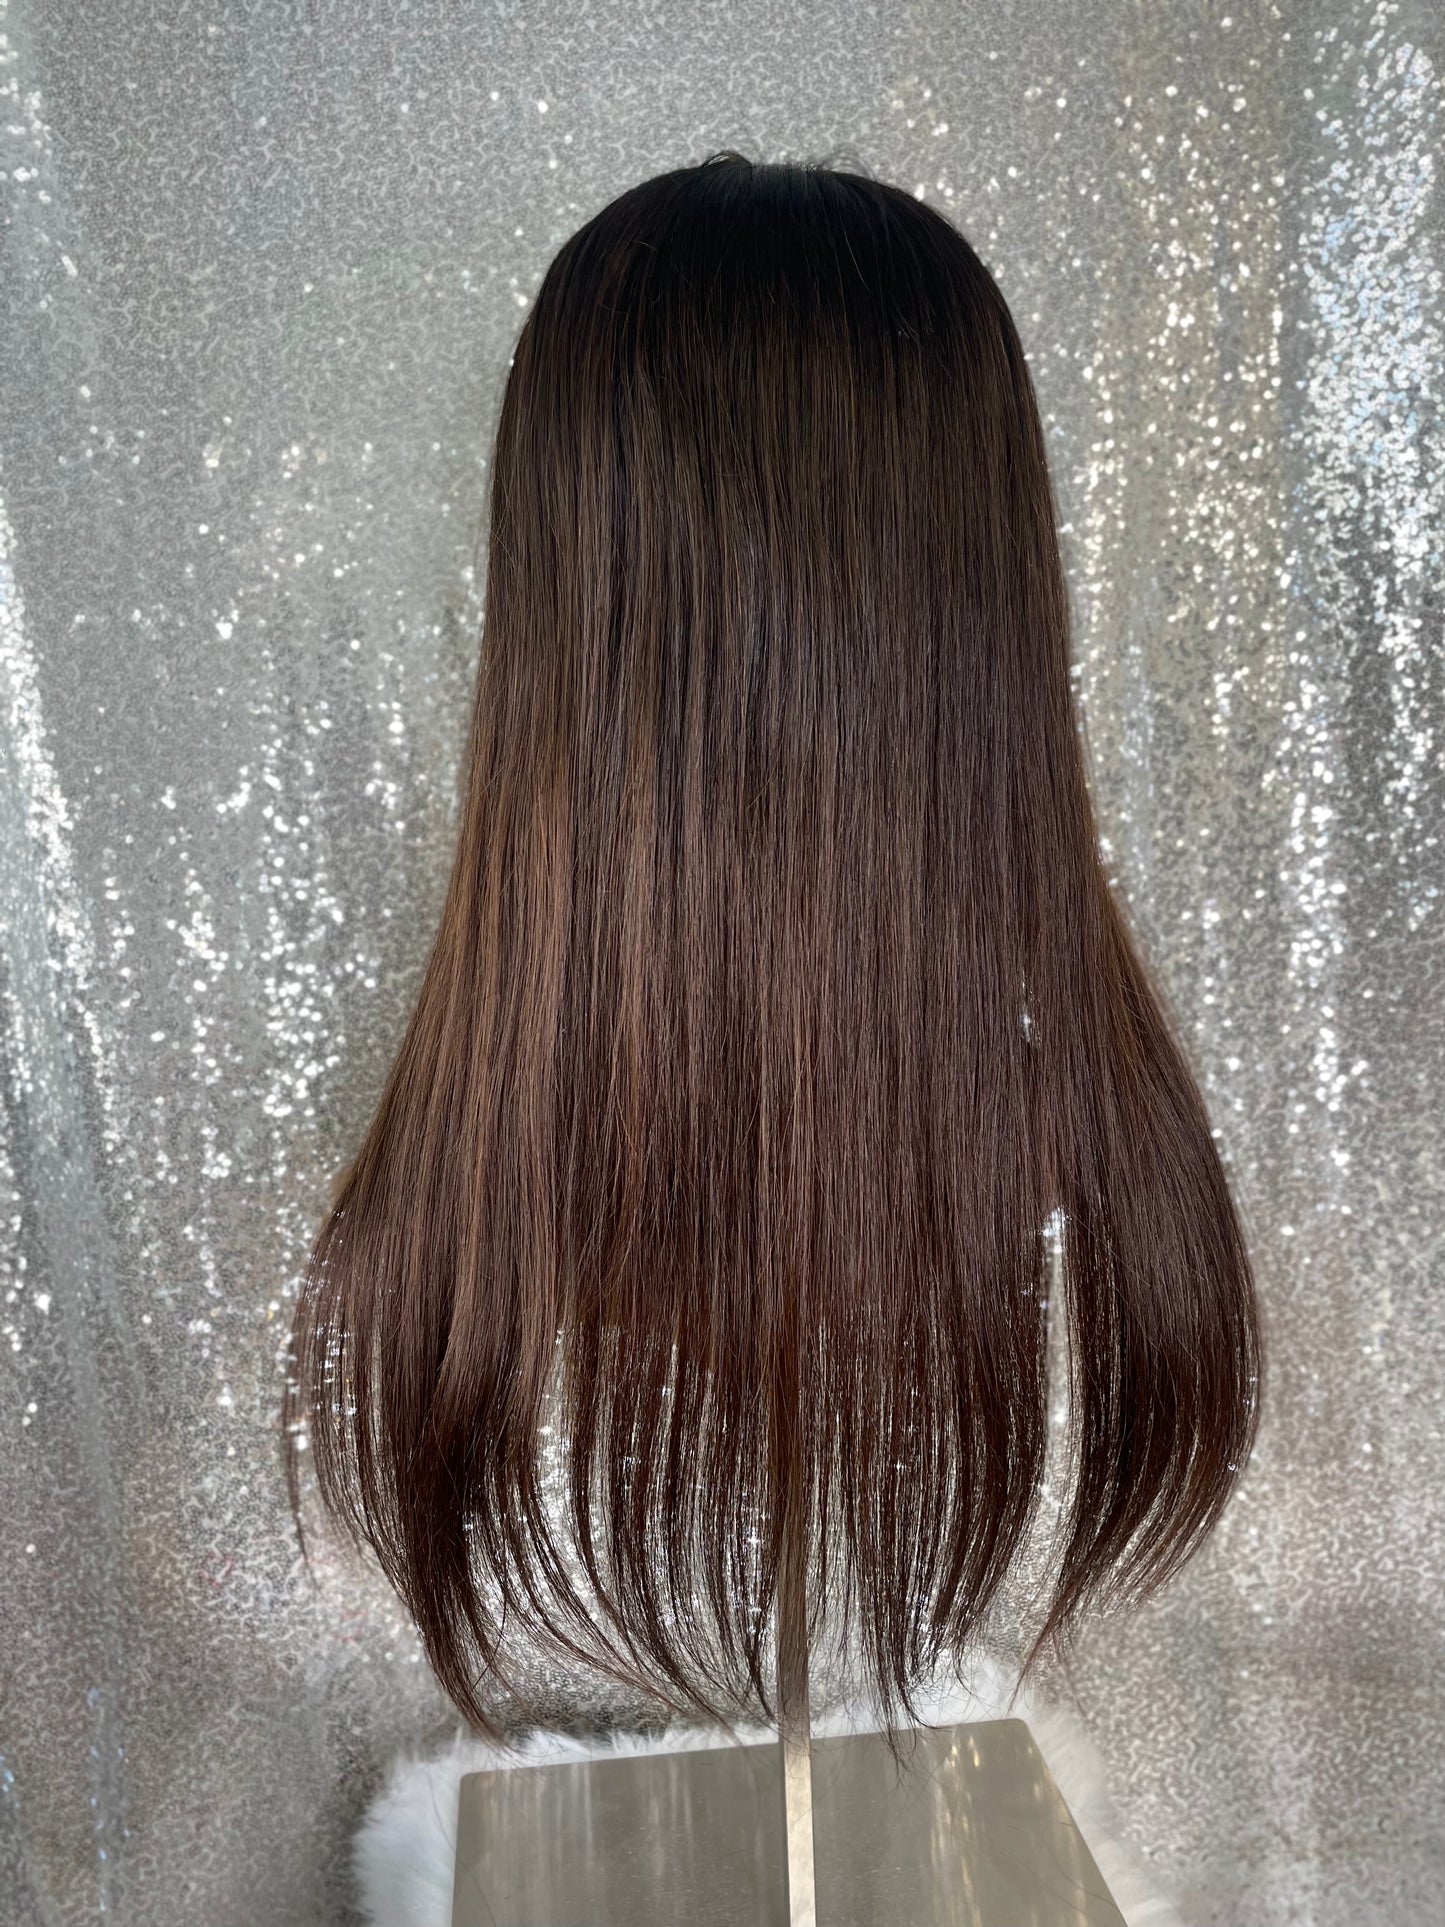 Topper Samantha  - 6x6 inch / 130 % / 20 inch / european hair